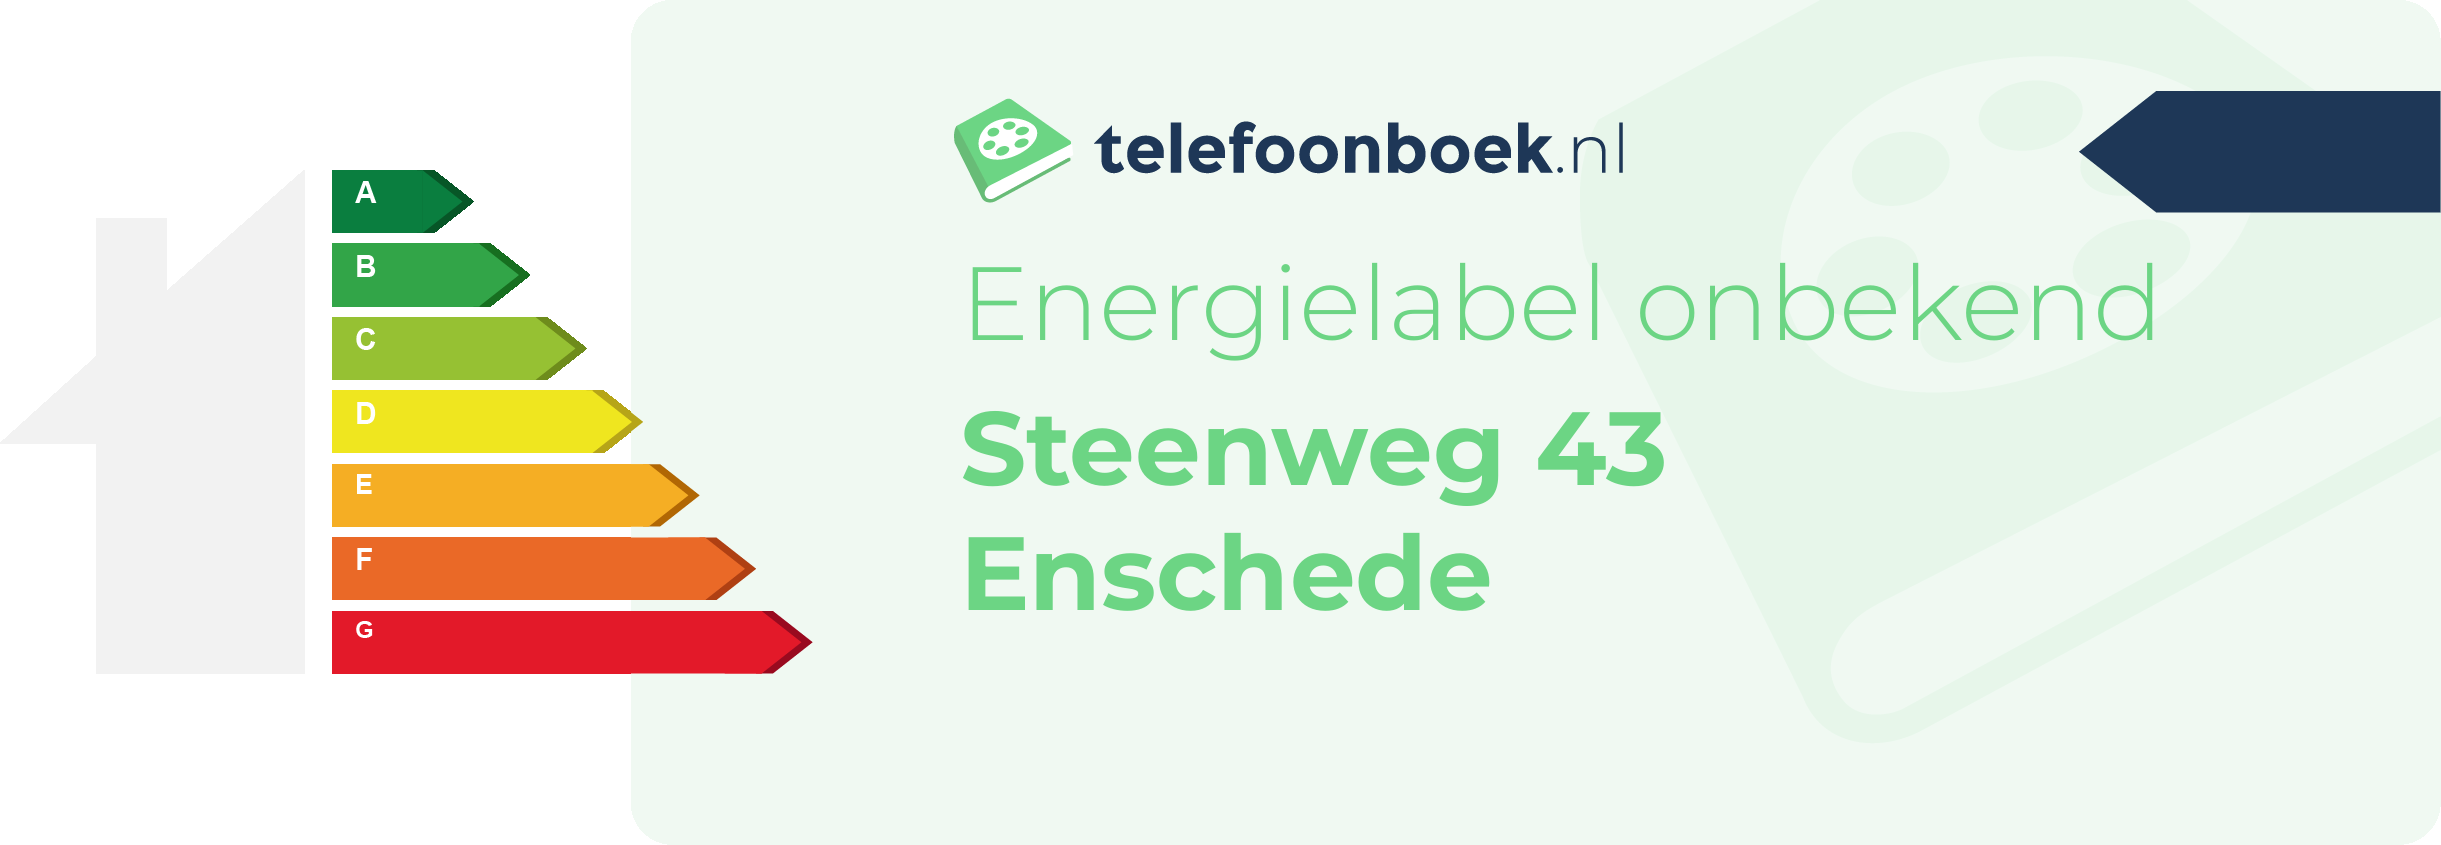 Energielabel Steenweg 43 Enschede